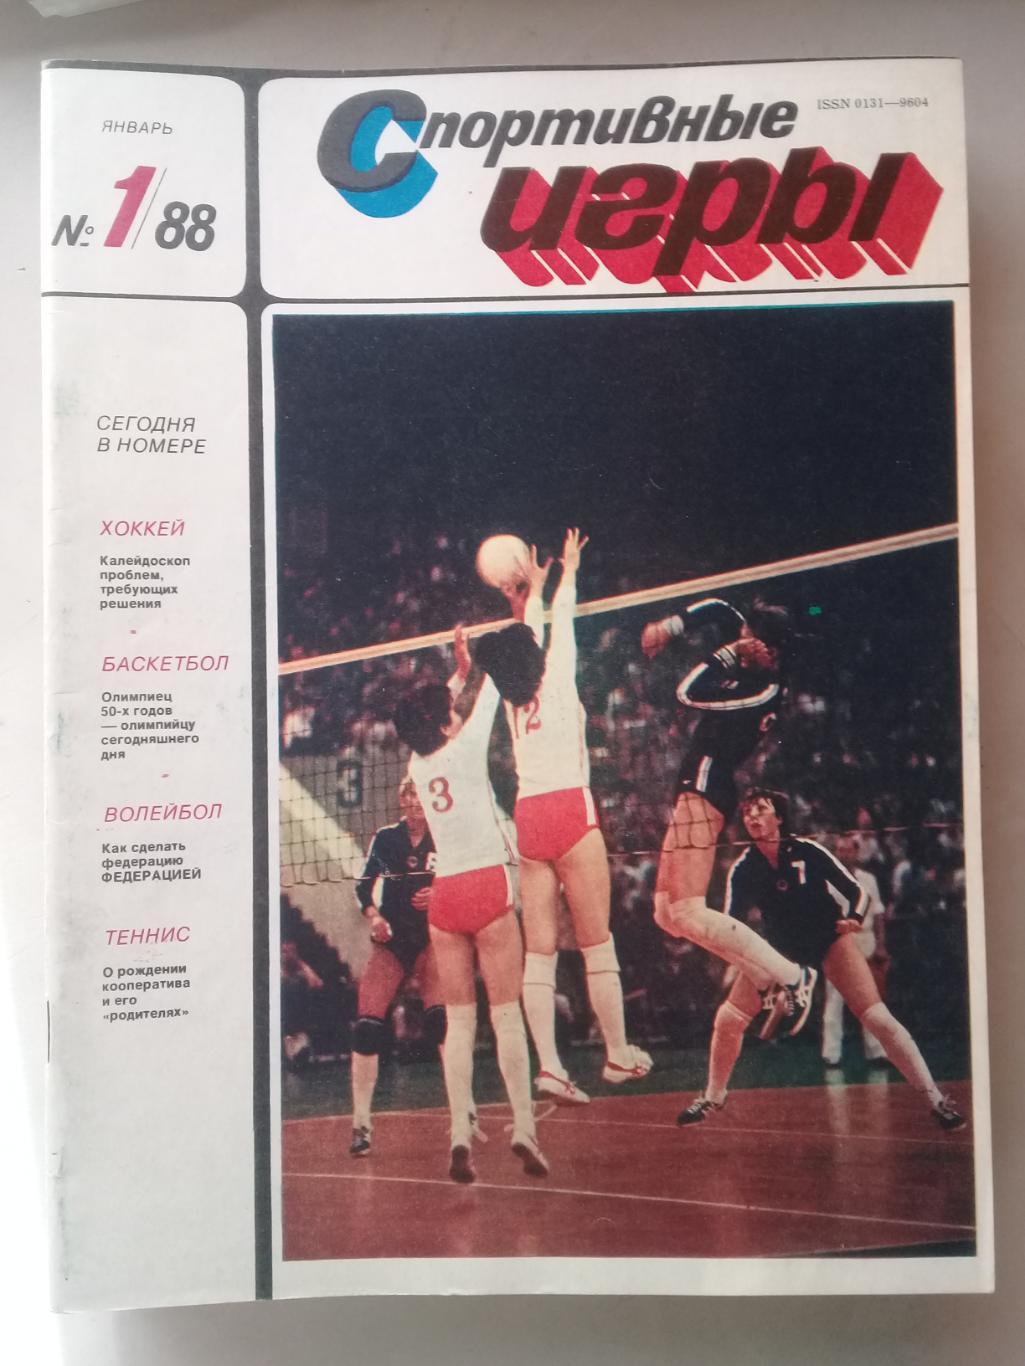 (Только для dk7586) Журнал Спортивные игры 1988 год. Годовой комплект.